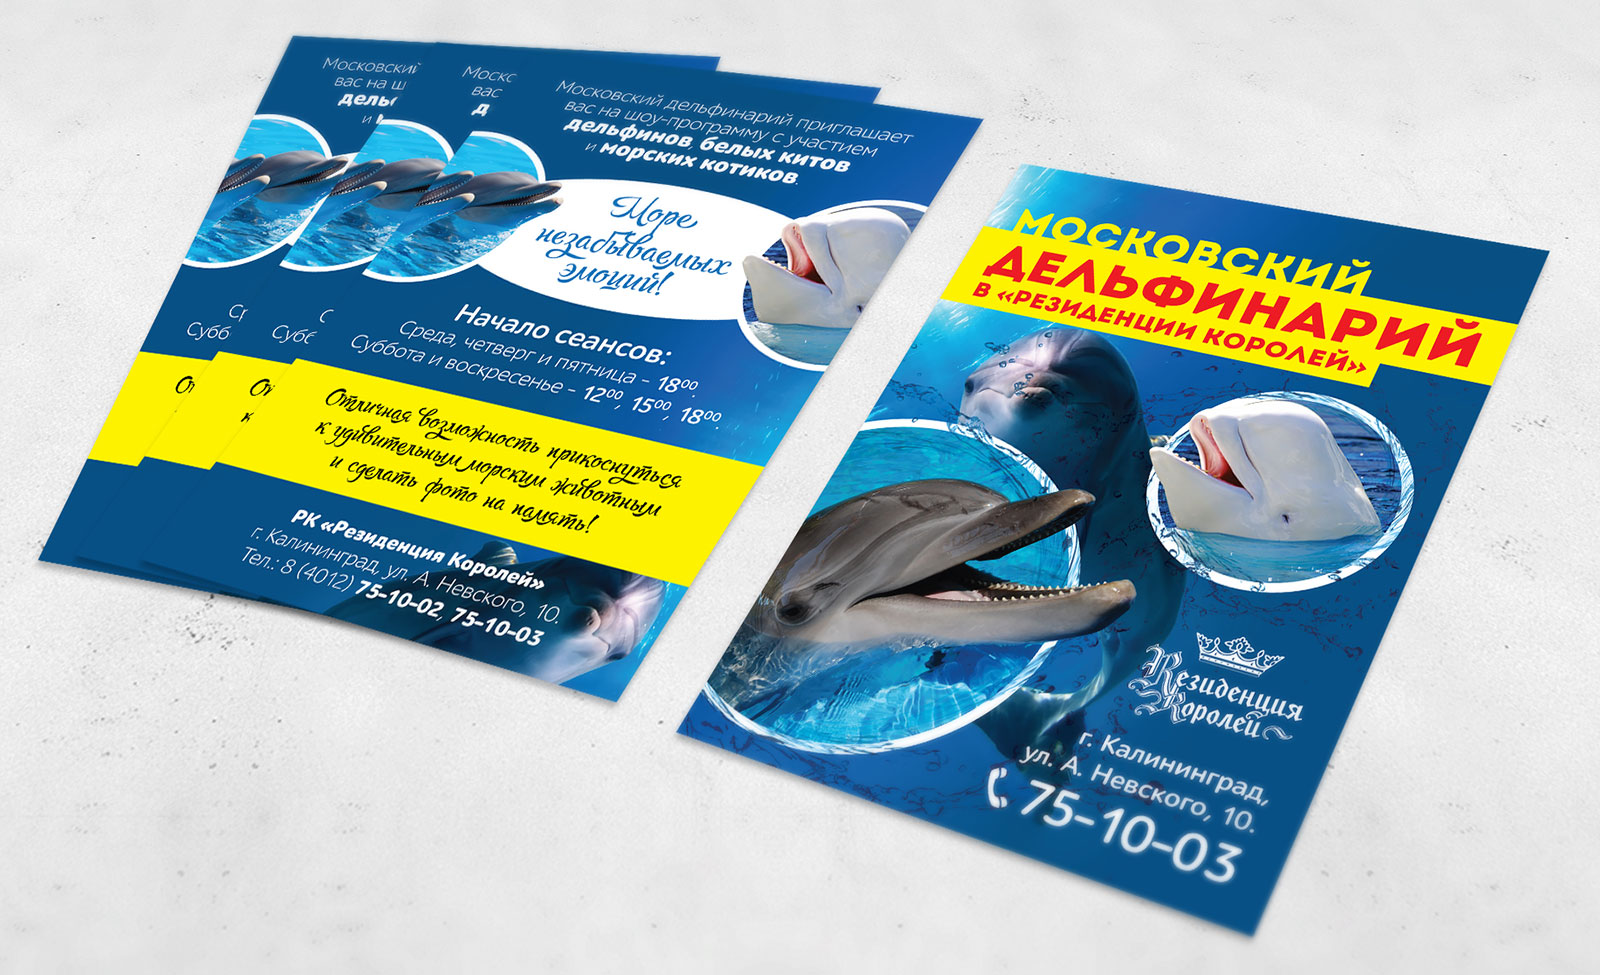 Билеты в дельфинарий москва